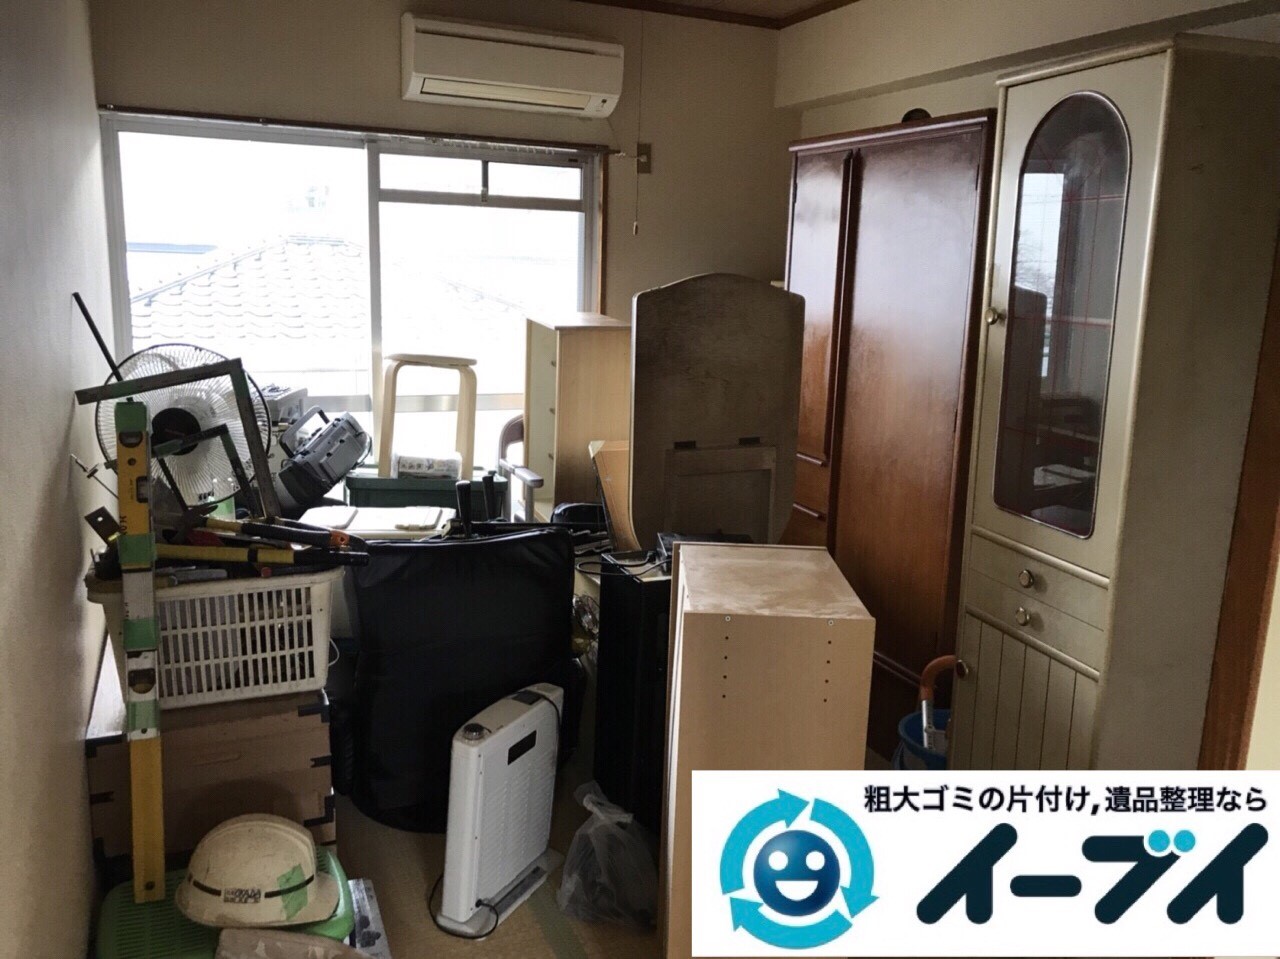 2018年2月24日大阪府大阪市港区でタンスや鏡台の家具処分や廃品の不用品回収をしました。写真4